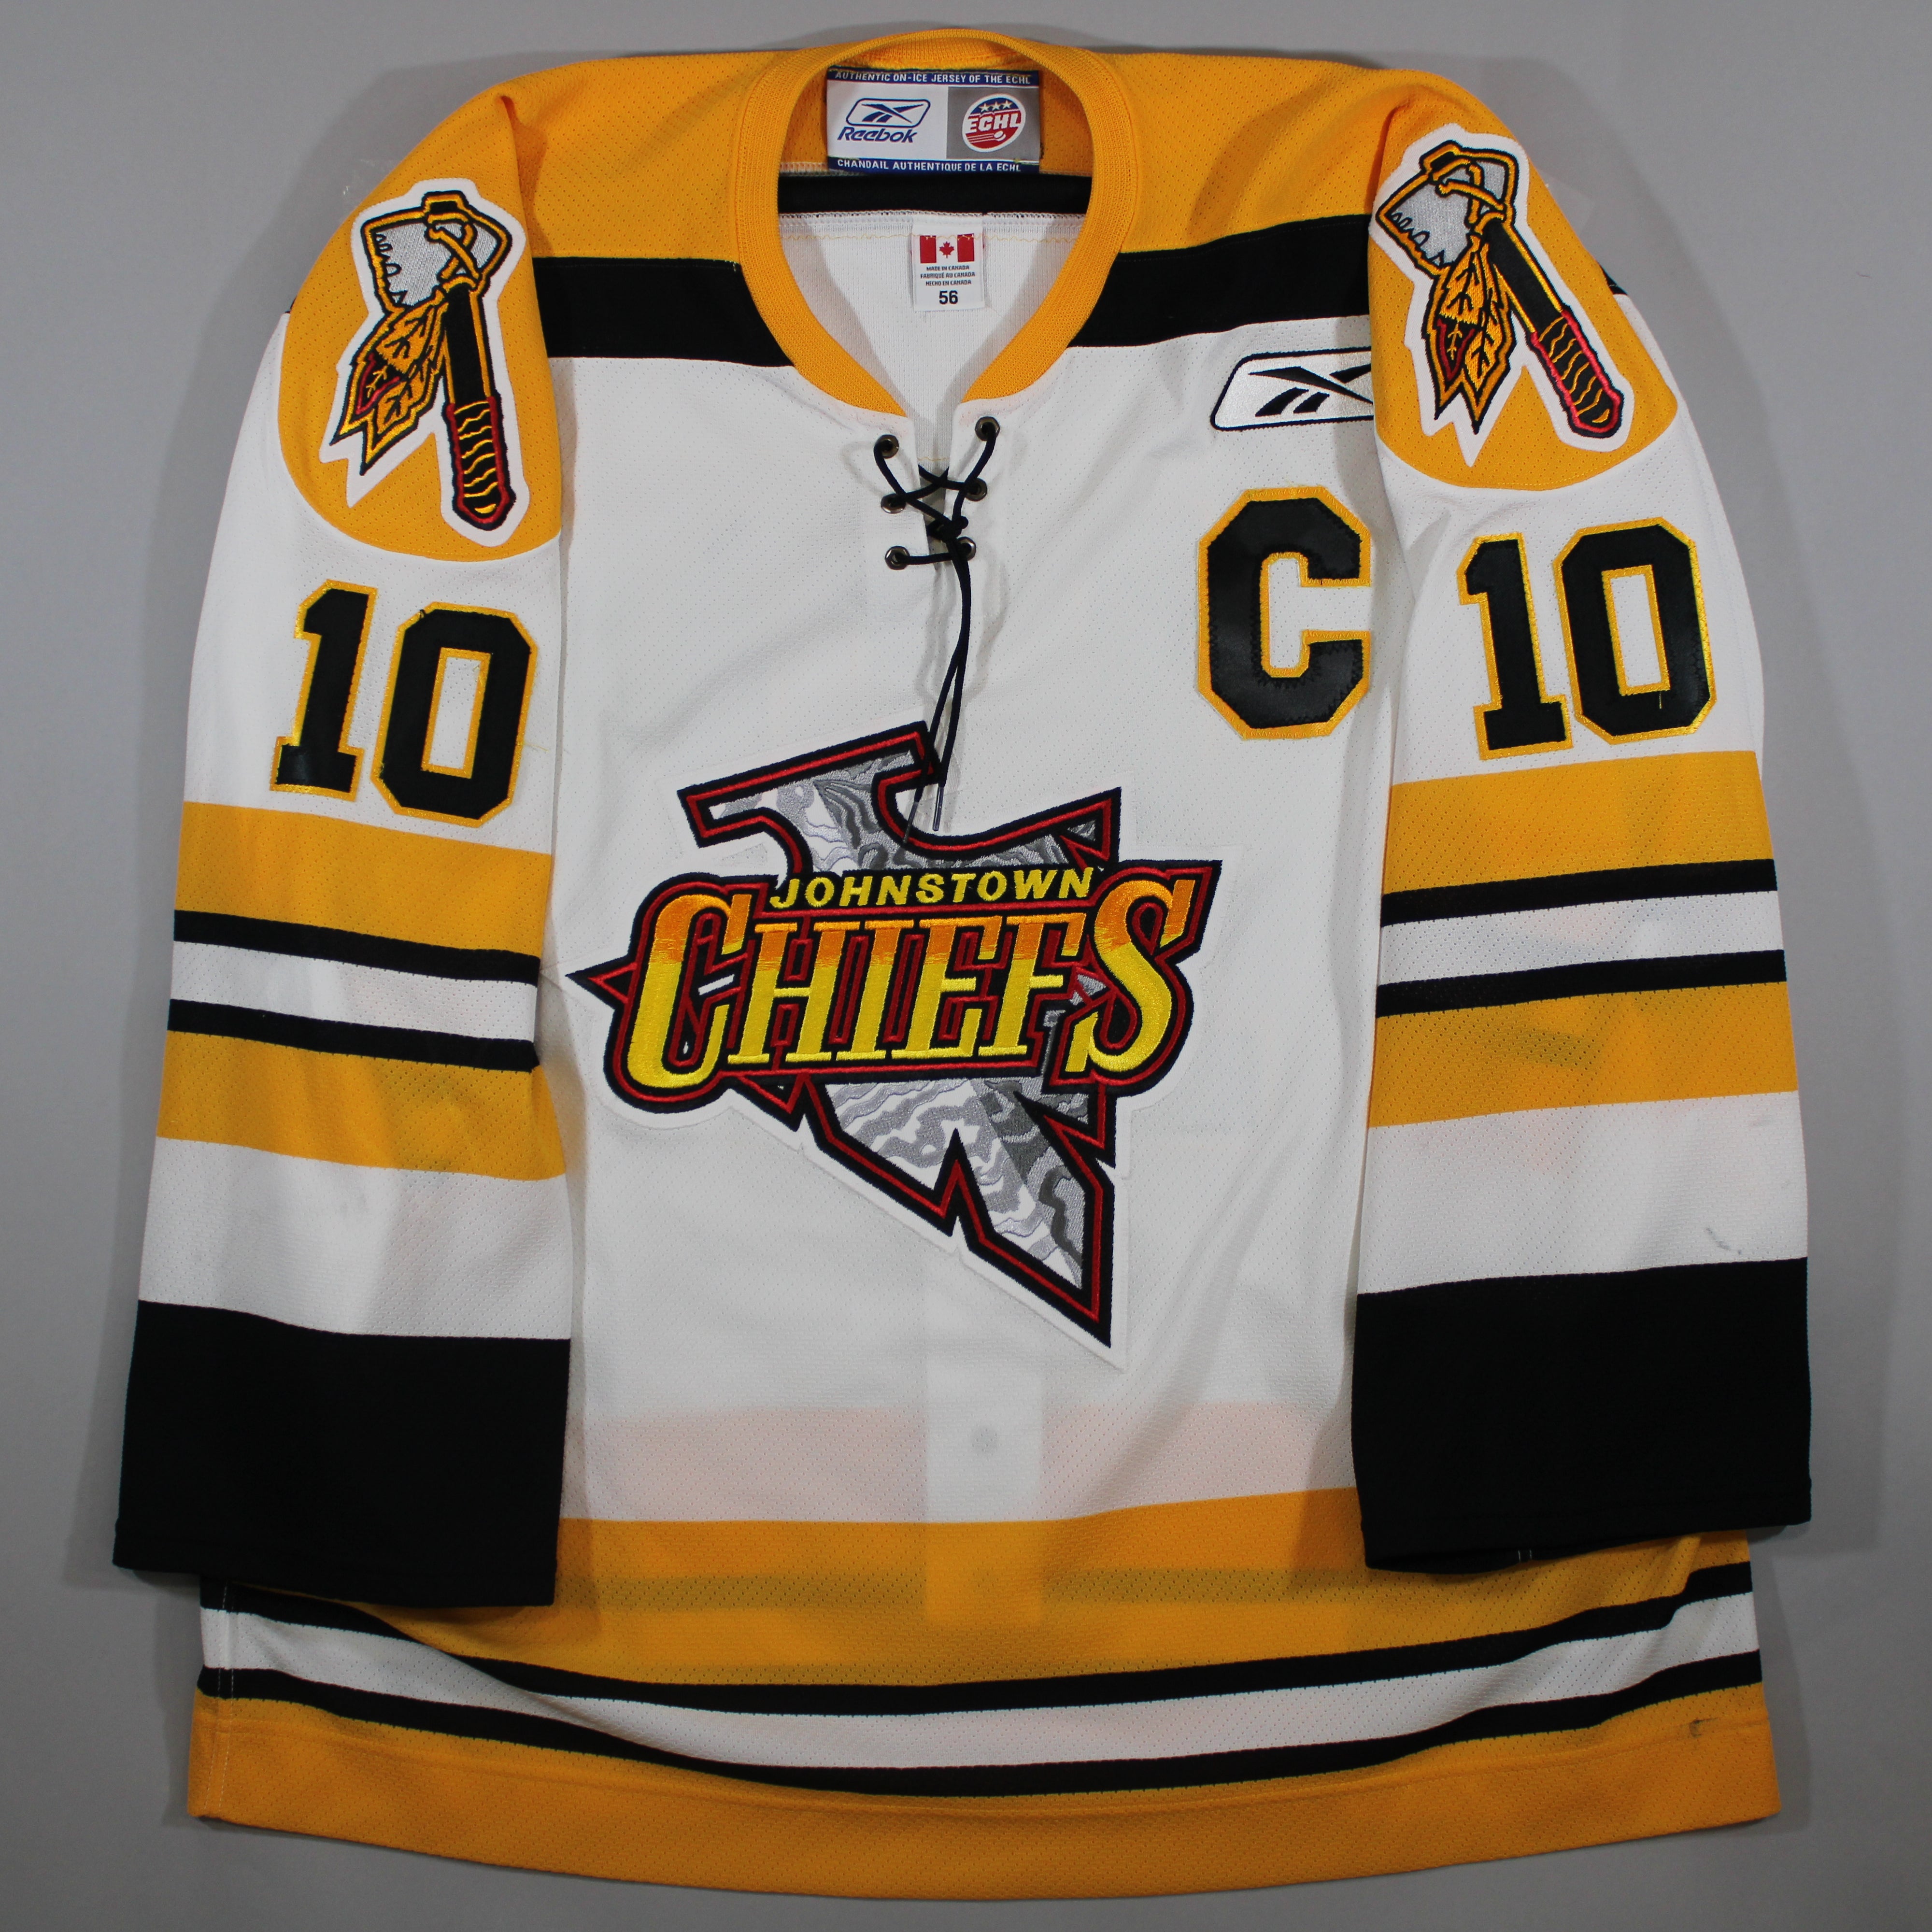 johnstown chiefs jersey